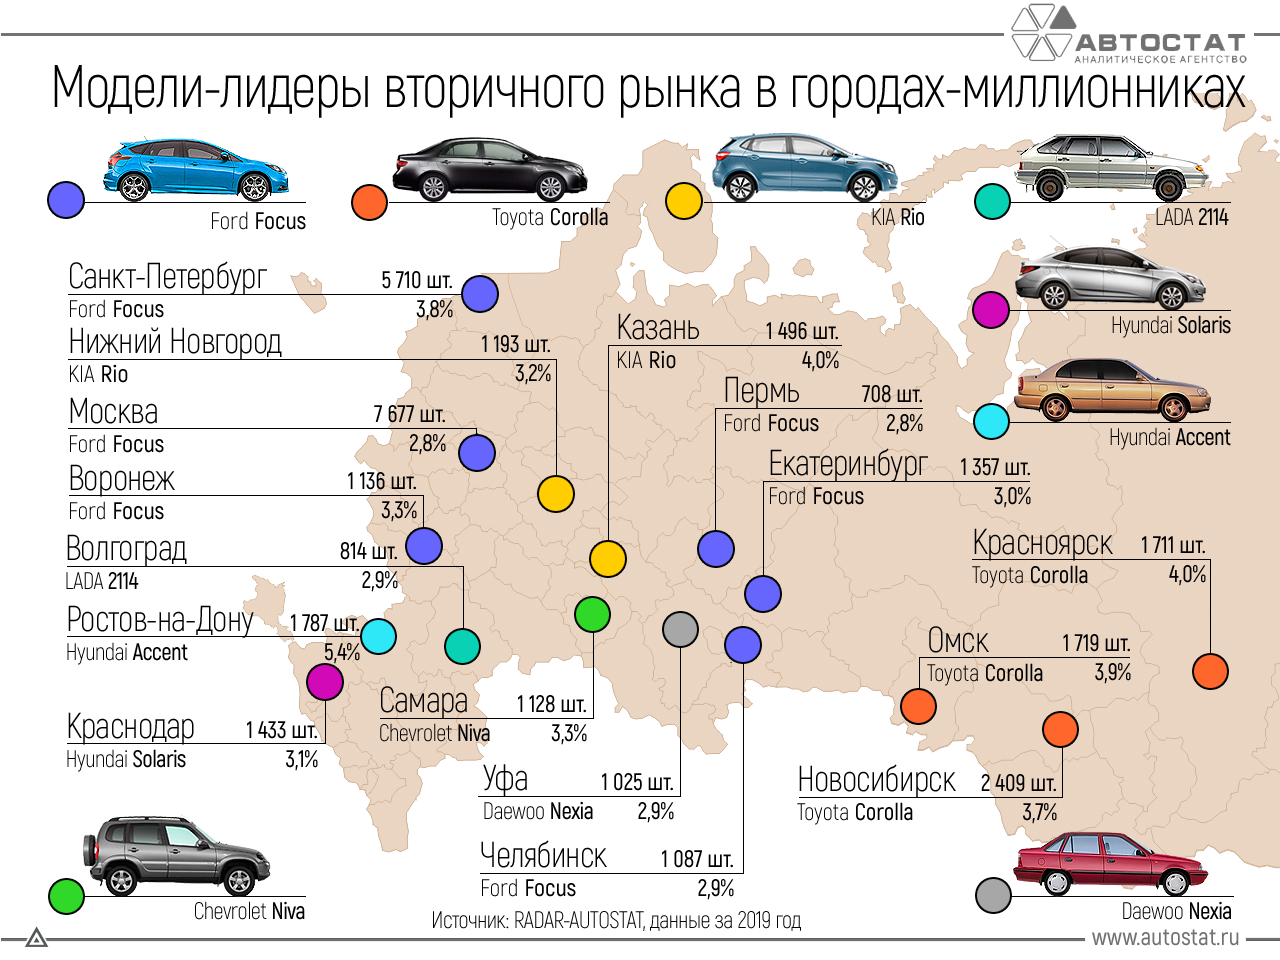 Топ-13 новых автомобилей стоимостью до 500 тысяч рублей